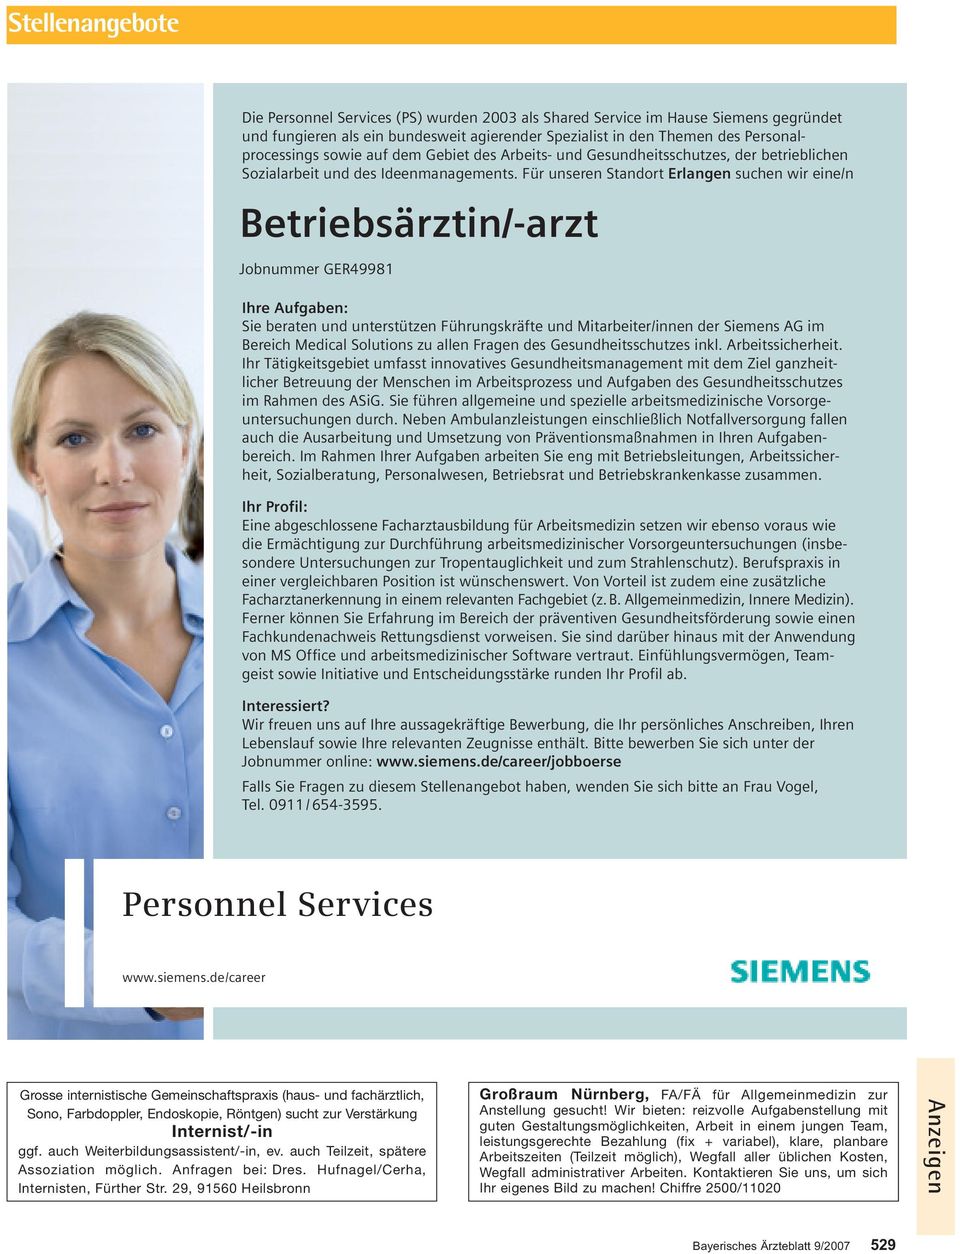 Für unseren Standort Erlangen suchen wir eine/n Betriebsärztin/-arzt Jobnummer GER49981 Ihre Aufgaben: Sie beraten und unterstützen Führungskräfte und Mitarbeiter/innen der Siemens AG im Bereich